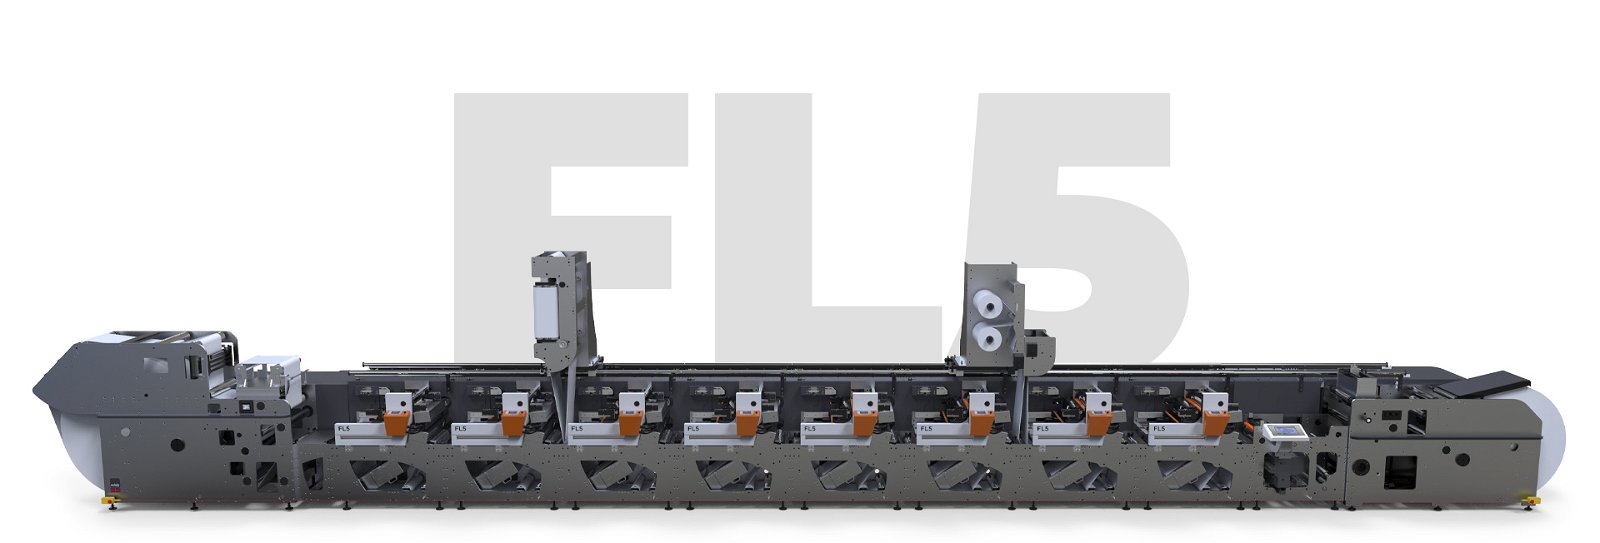 FL5 - Solución de impresión flexográfica